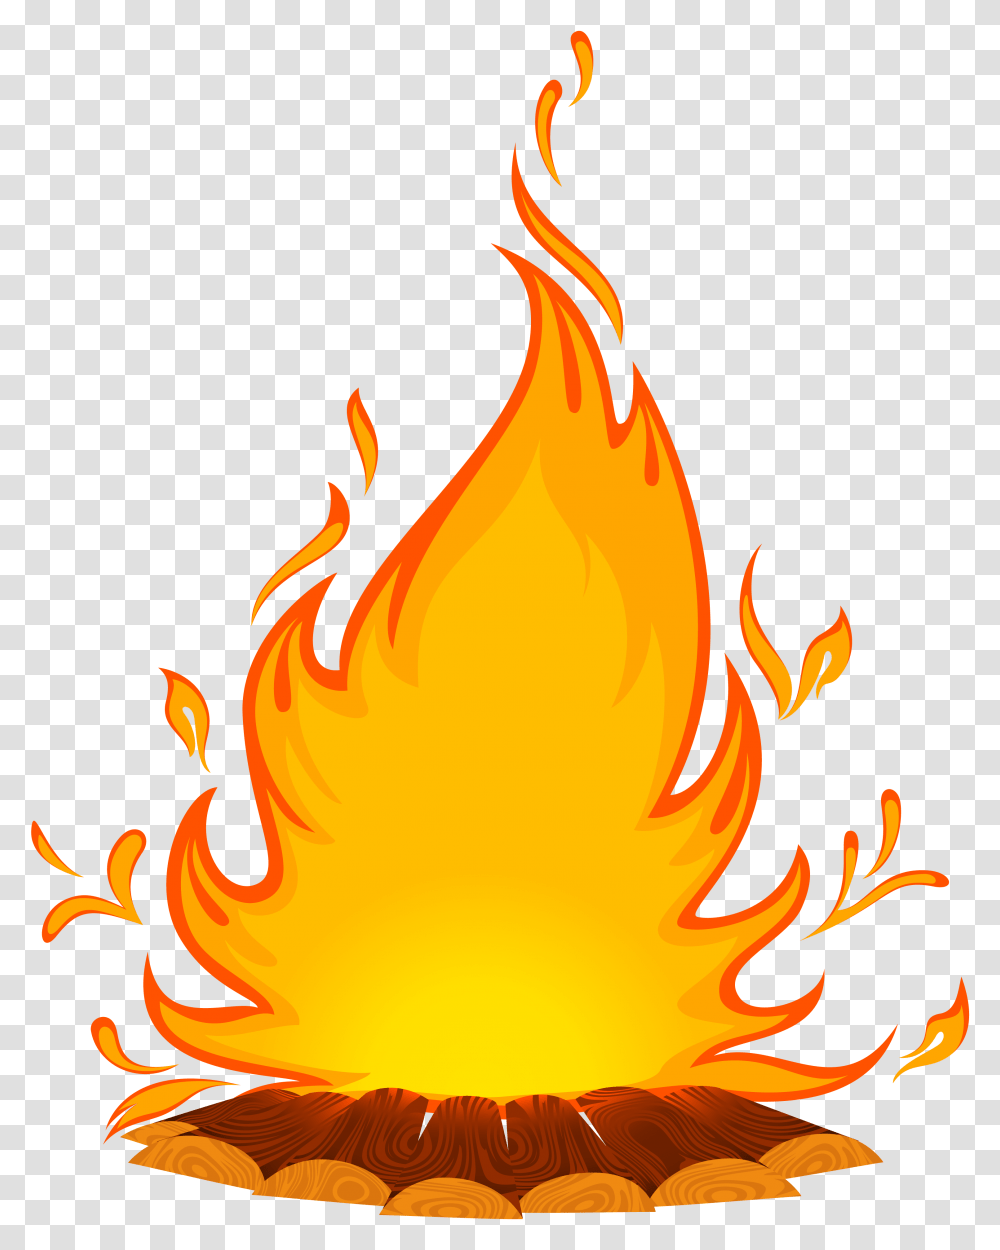 Fire Cartoon Clip Art Feu De Chemine Dessin, Flame, Bonfire Transparent Png